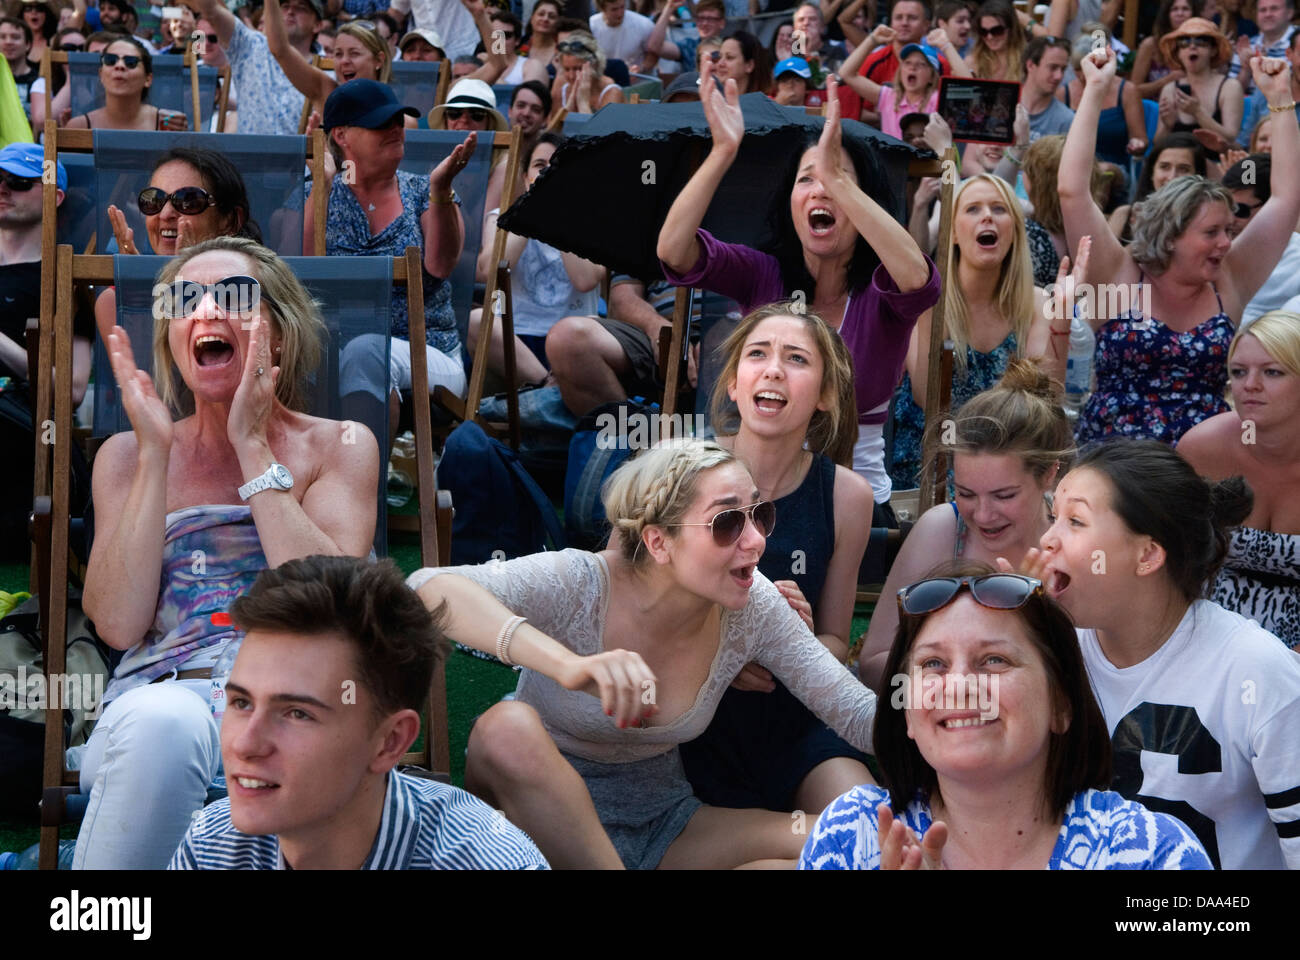 Menschen, die Tennis-Emotionen sehen, treffen glückliche Sportfans Teenager Mädchen junge Erwachsene, die Live-Sport auf dem riesigen Fernsehbildschirm beobachten. Glücklich über den Spielverlauf, HOMER SYKES aus den 2013 2010er Jahren Stockfoto